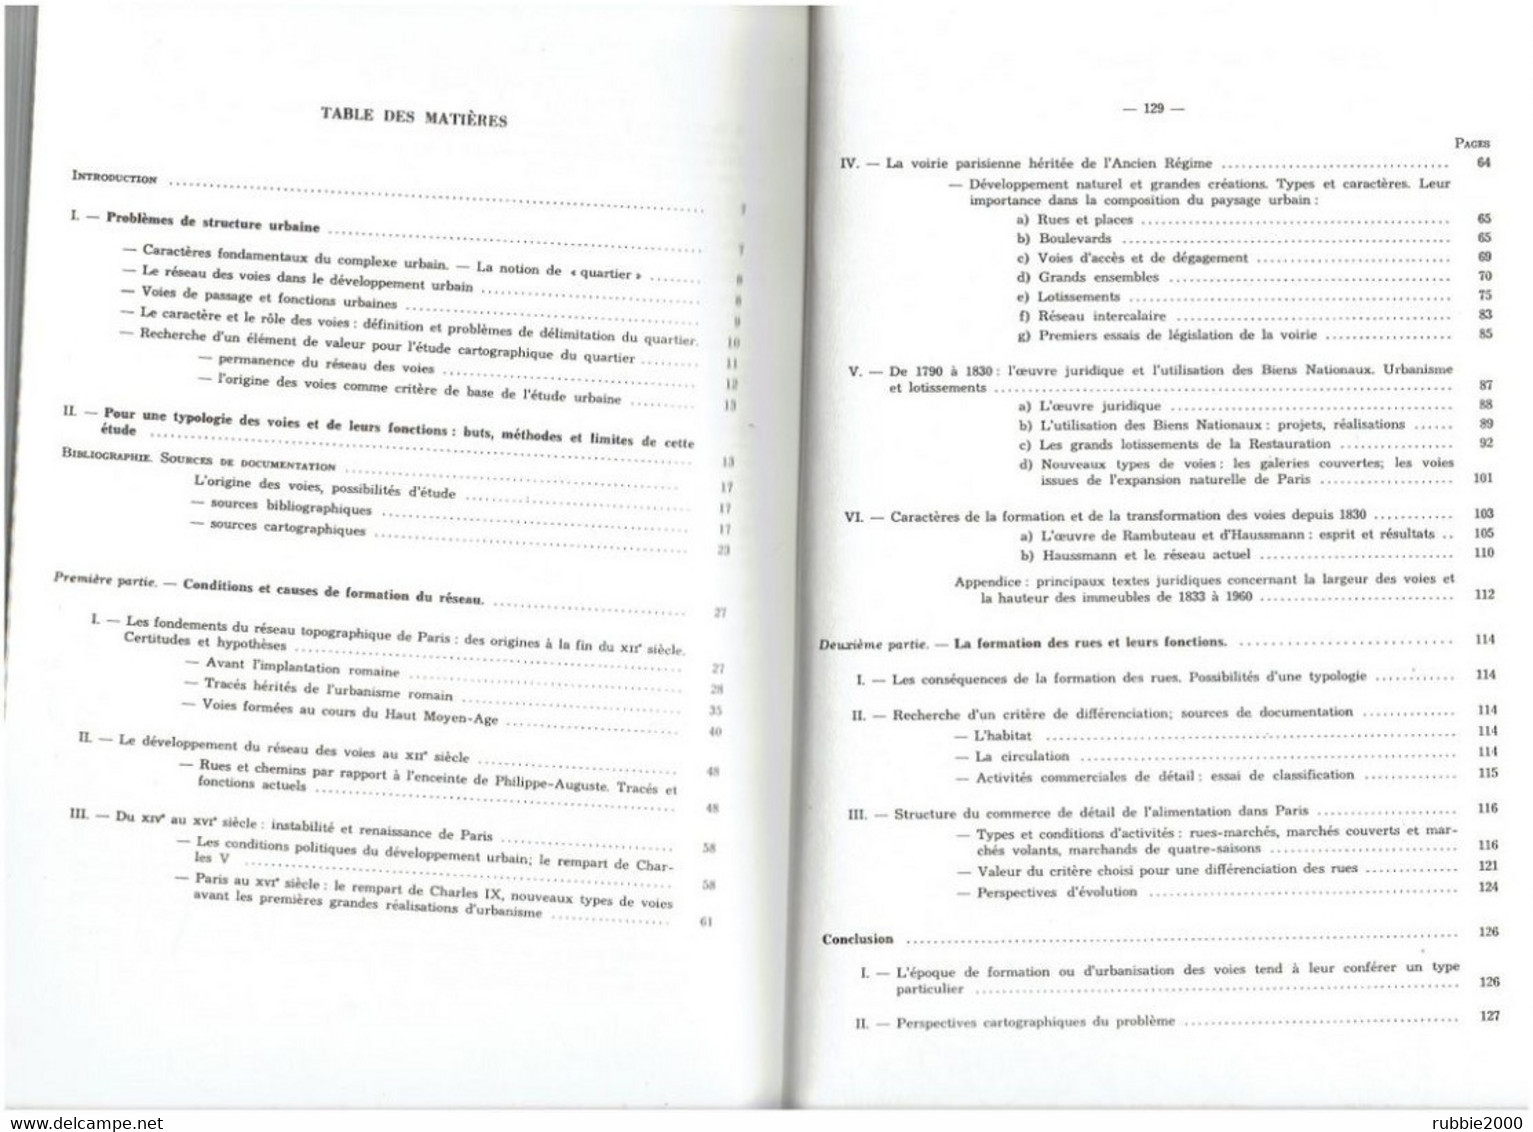 LE TRACE DES RUES DE PARIS 1988 BERNARD ROULEAU VOIE VOIRIE CIRCULATION QUARTIER RUE CHEMIN REMPART HAUSSMANN PLACE - Paris